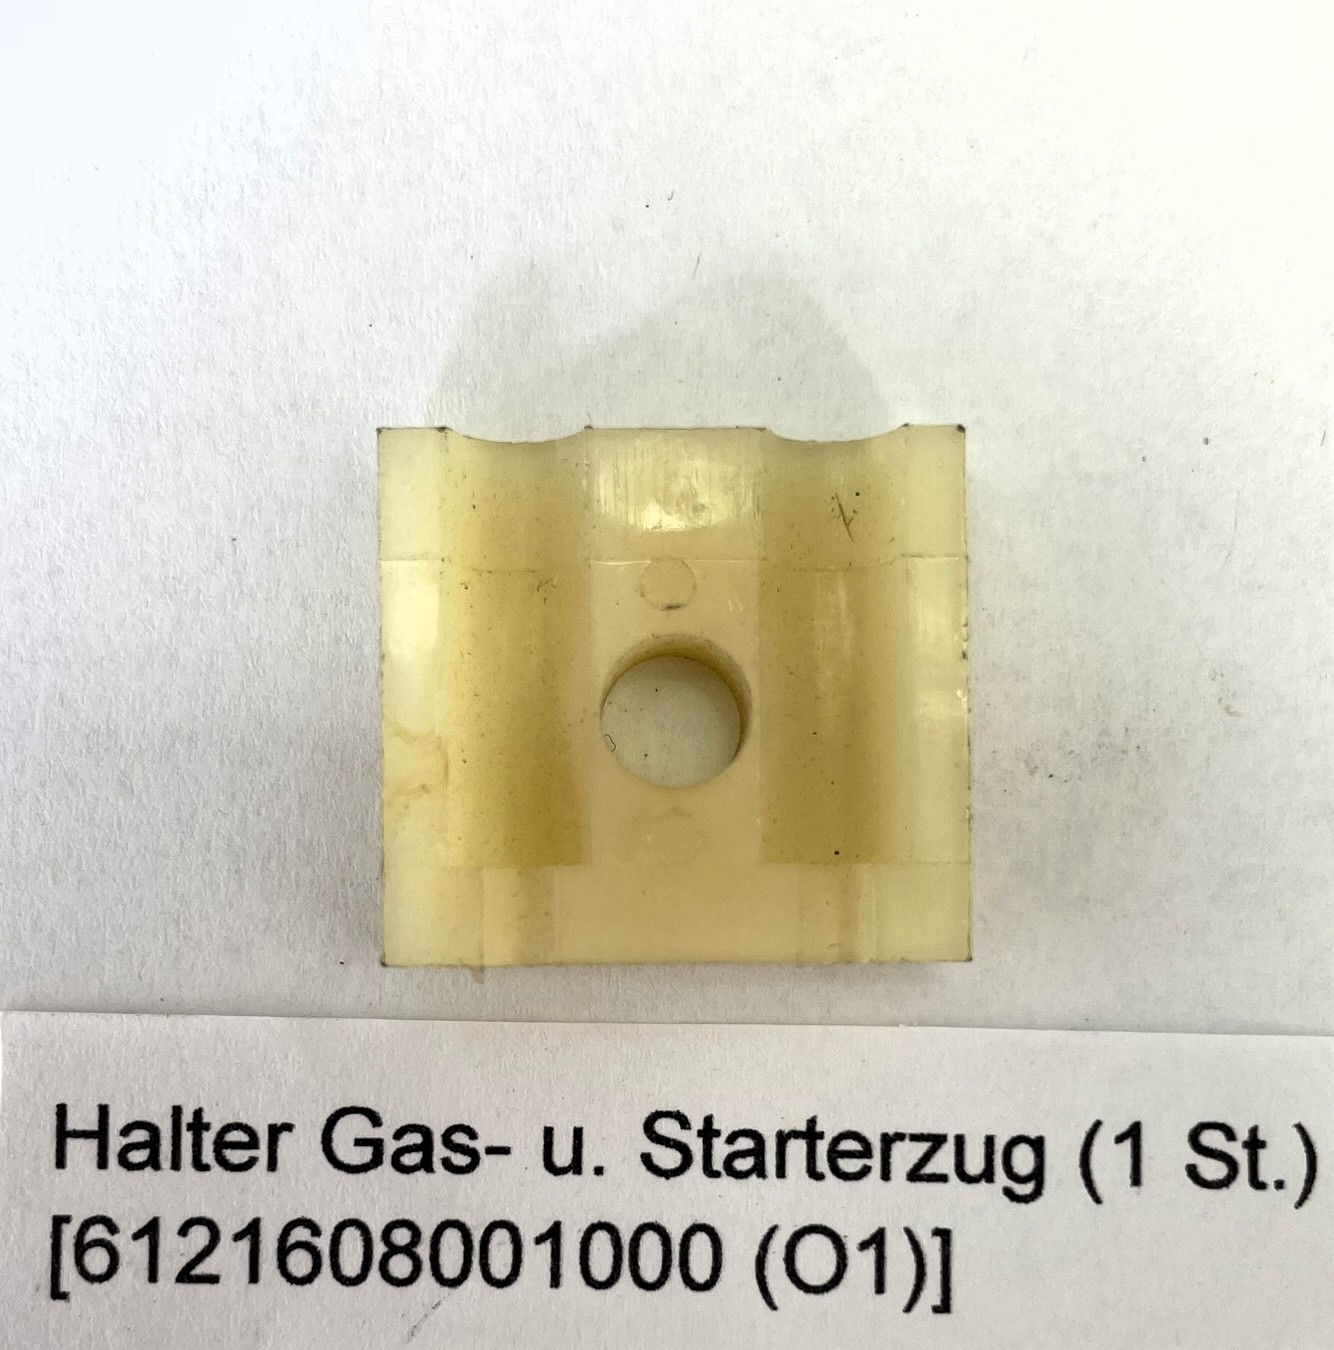 Halter Gas- u. Starterzug (1 St.)